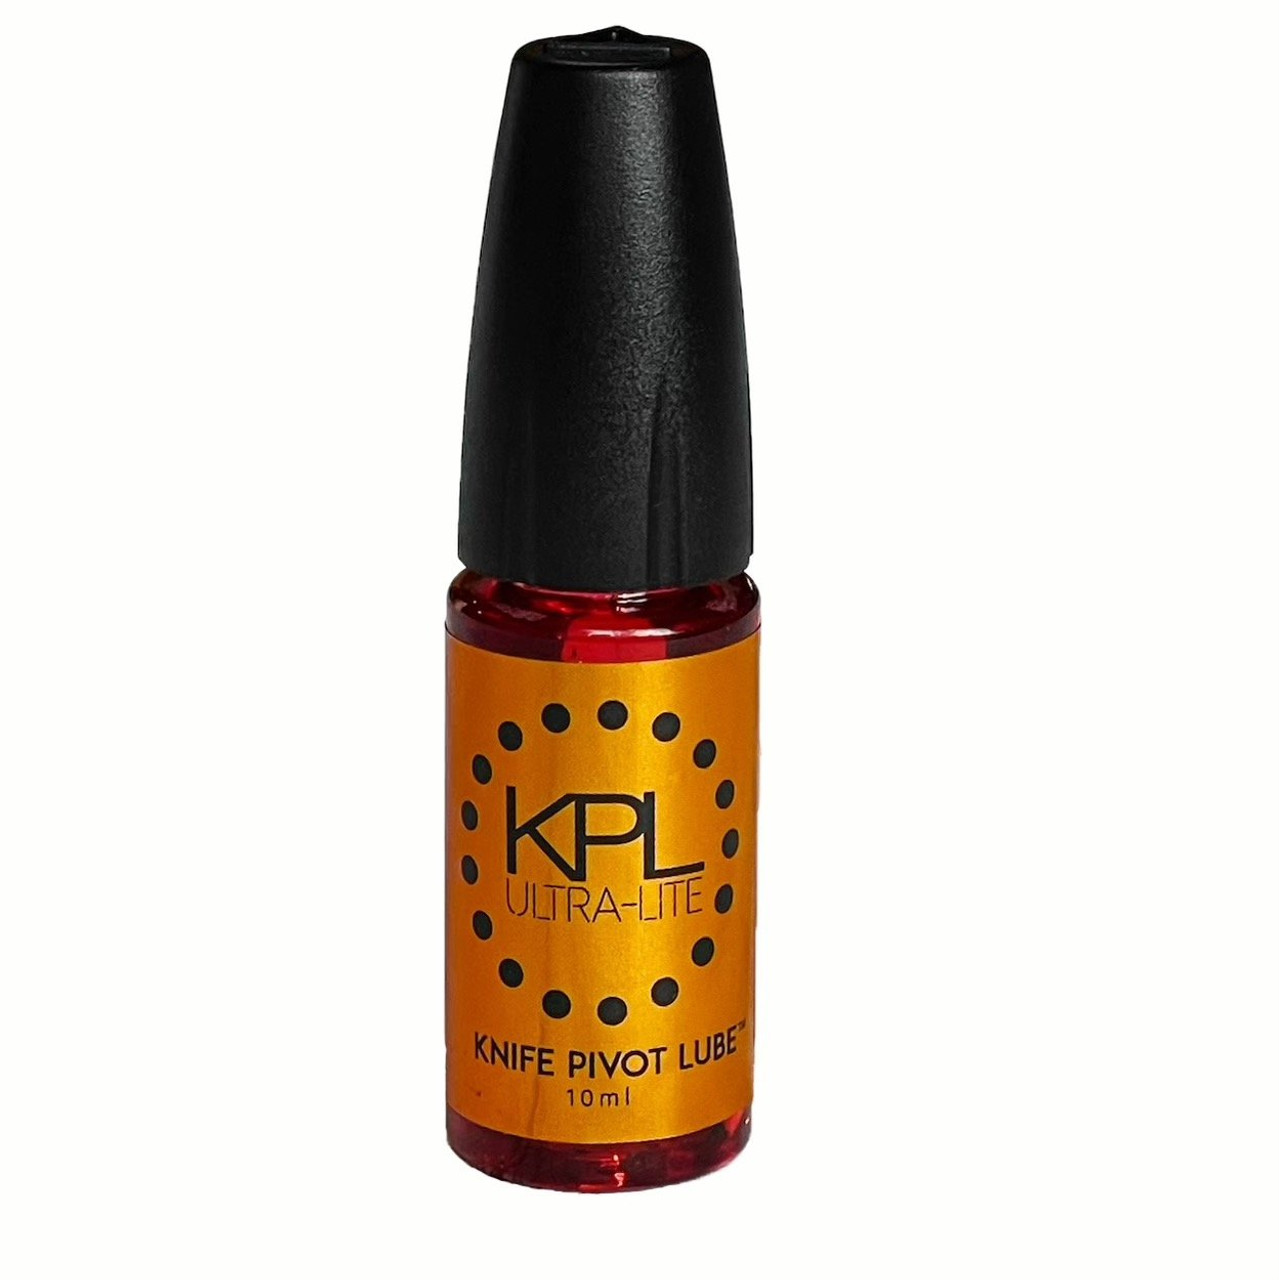 KPL Knife Pivot Lube, Heavy 10ml, Knife Detent Oil